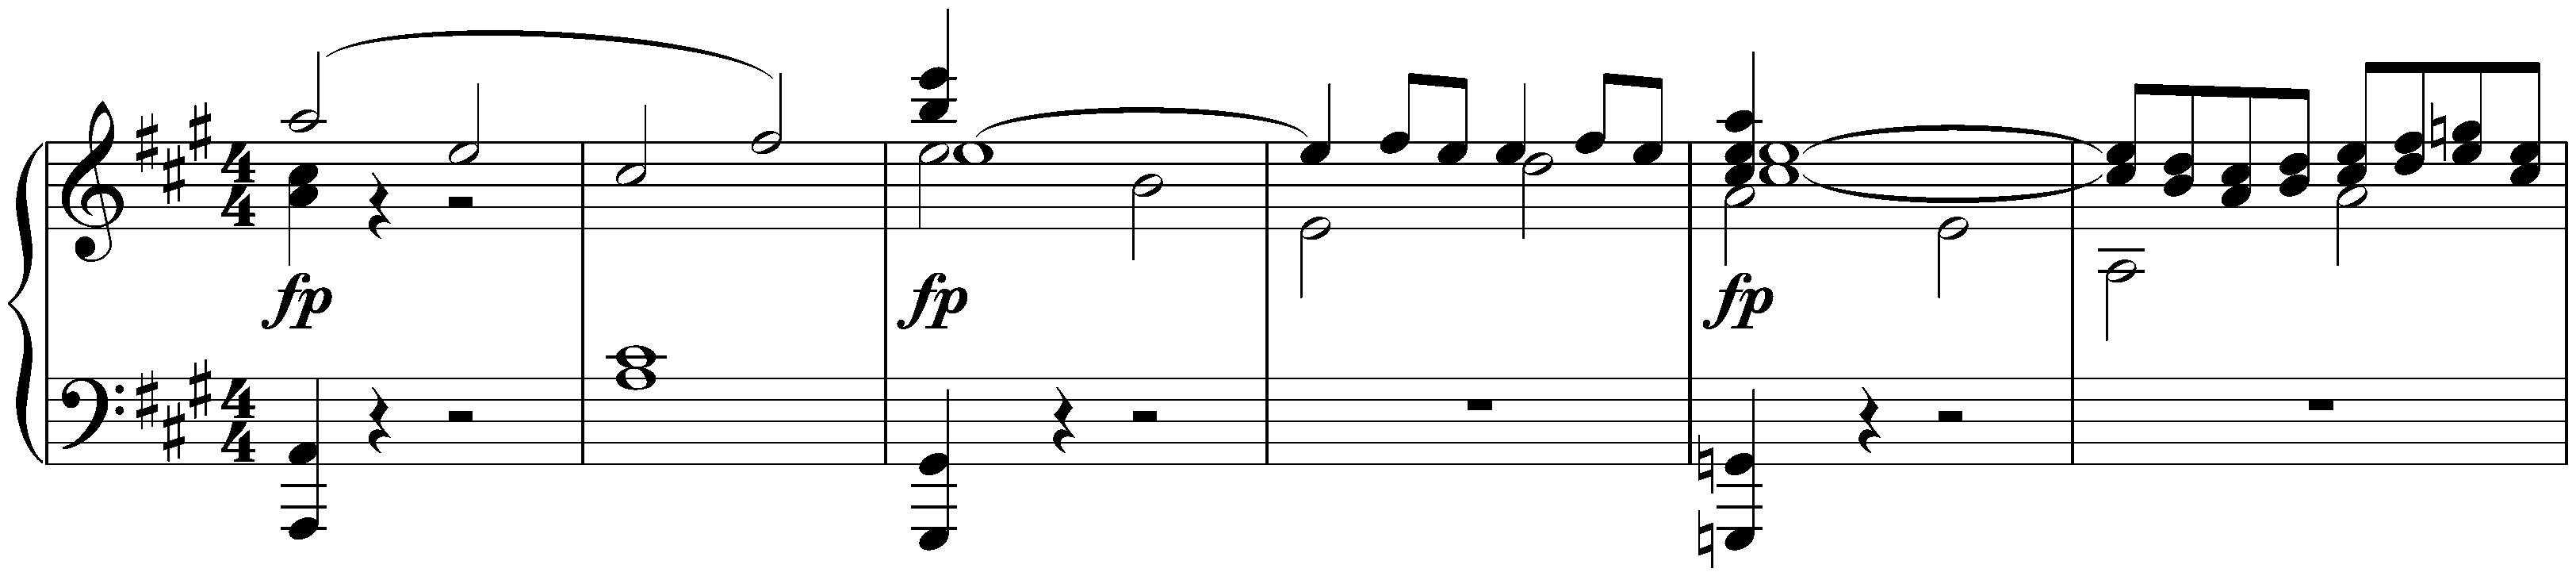 Symphony no. 7 in A major, op. 92; 1. Poco sostenuto – Vivace